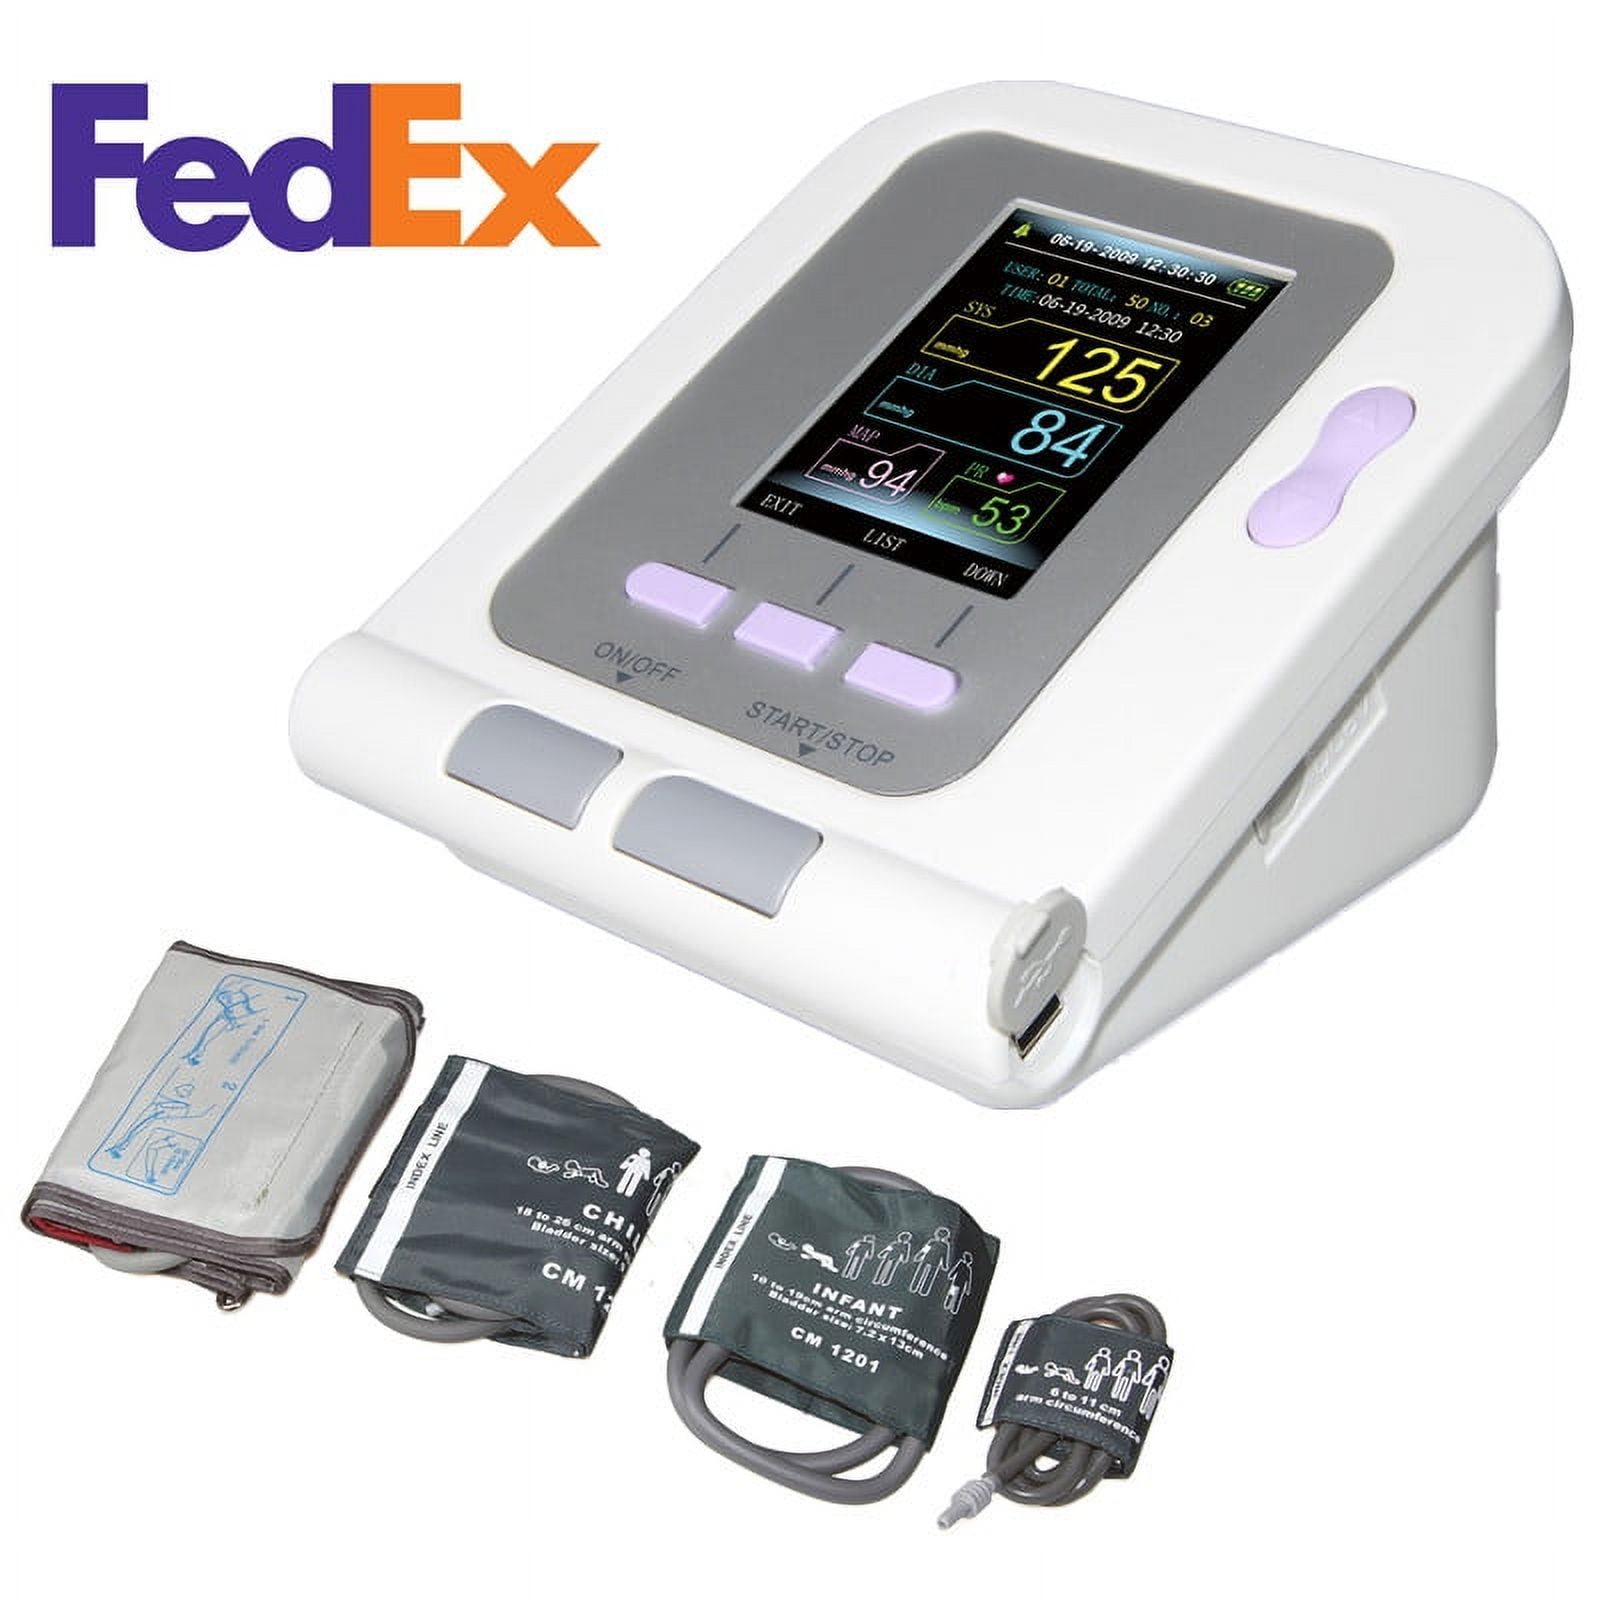 CONTEC Digital Blood Pressure Monitor CONTEC08A+Neonatal